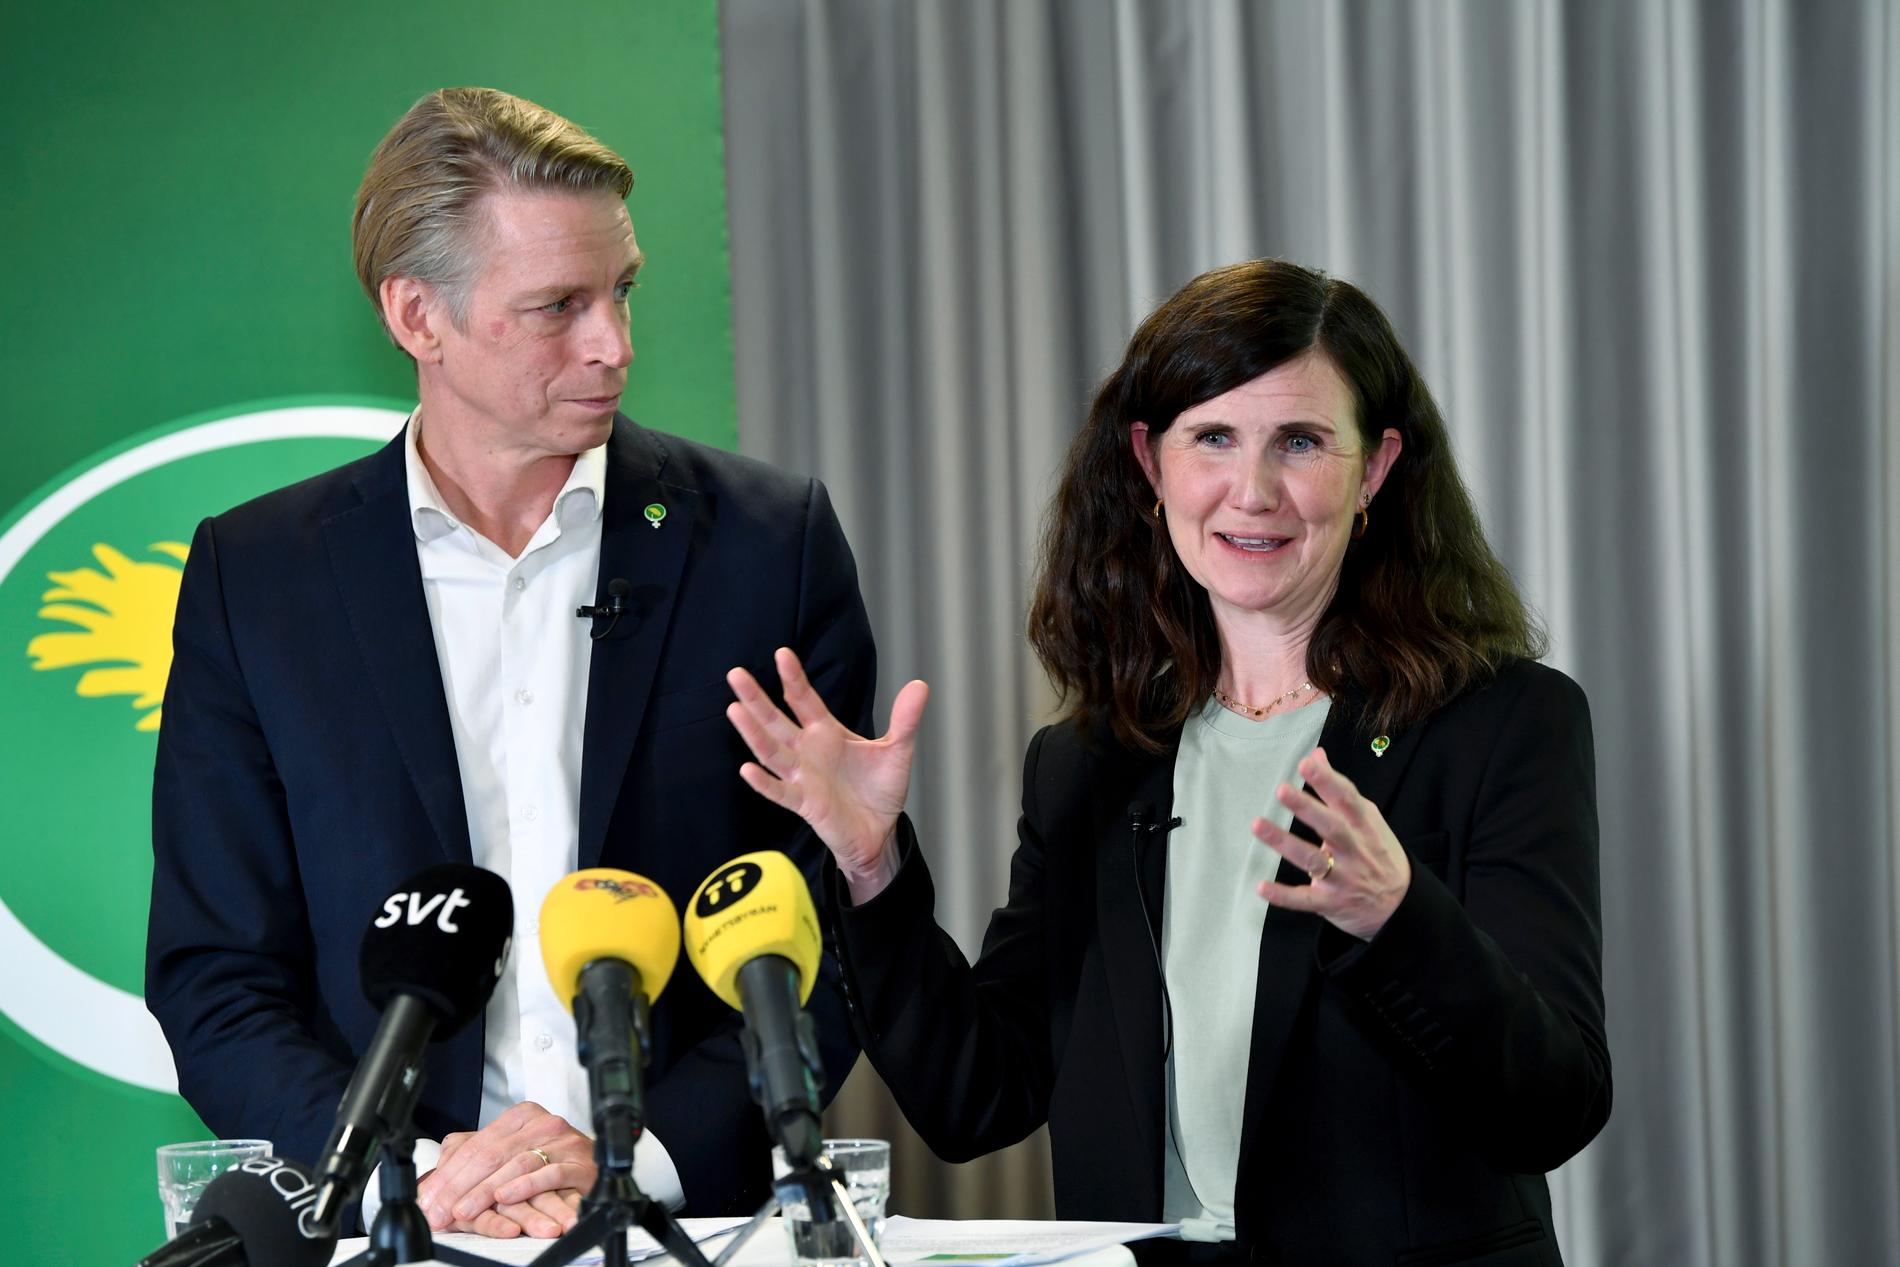 Desperata? Miljöpartiets språkrör Per Bolund och Märta Stenevi tar partiet vänsterut, anser statsvetare.